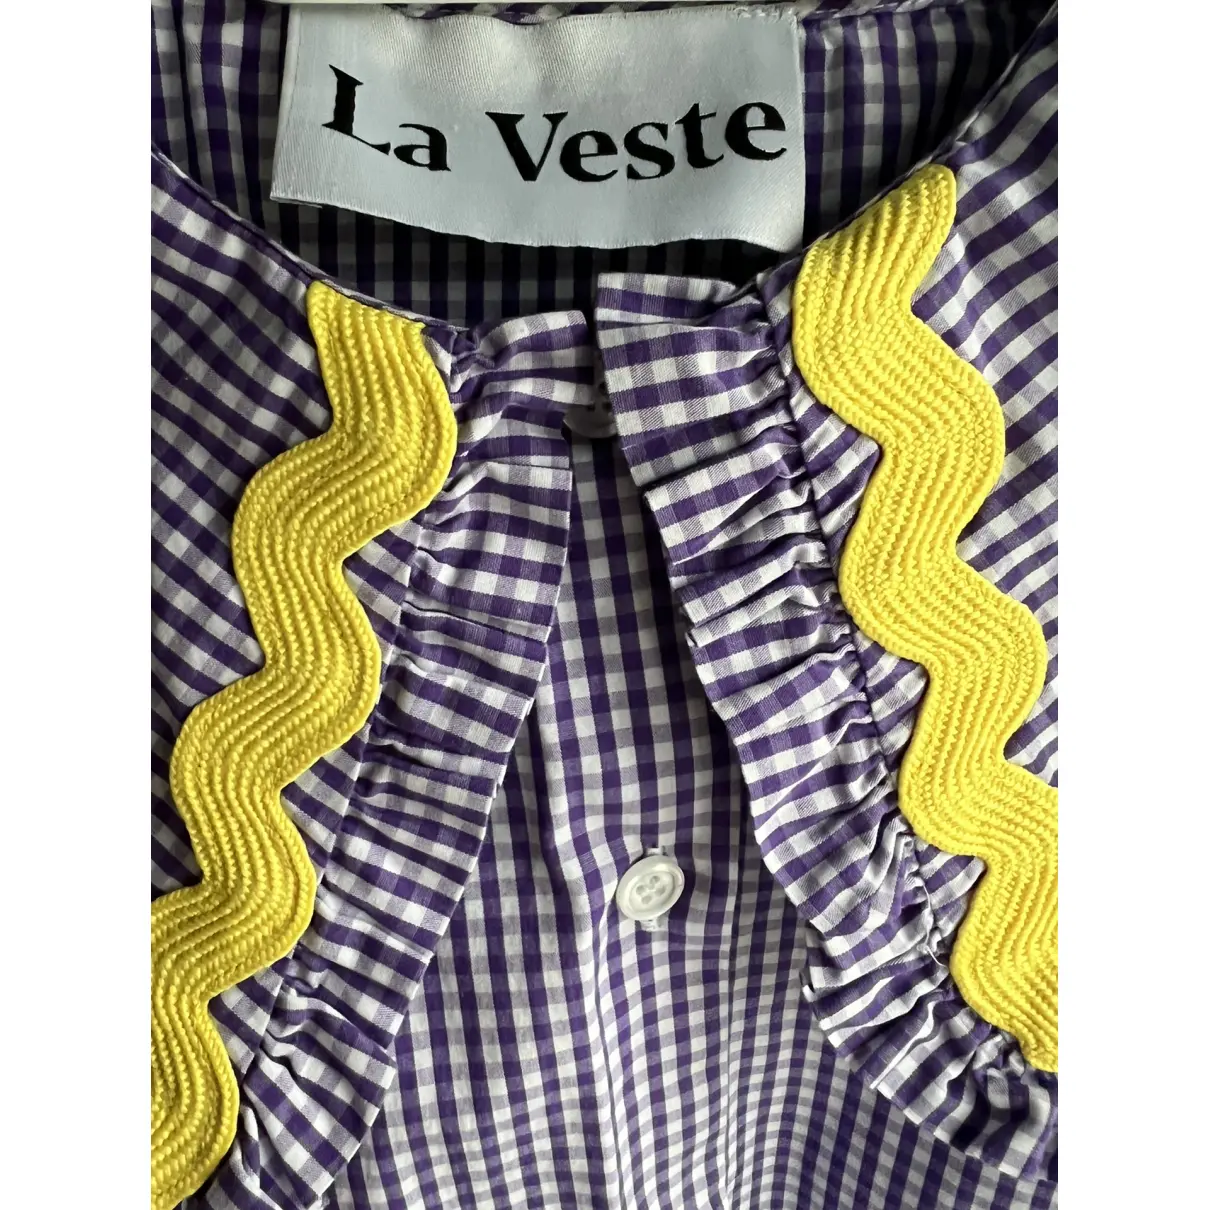 Buy La Veste Shirt online